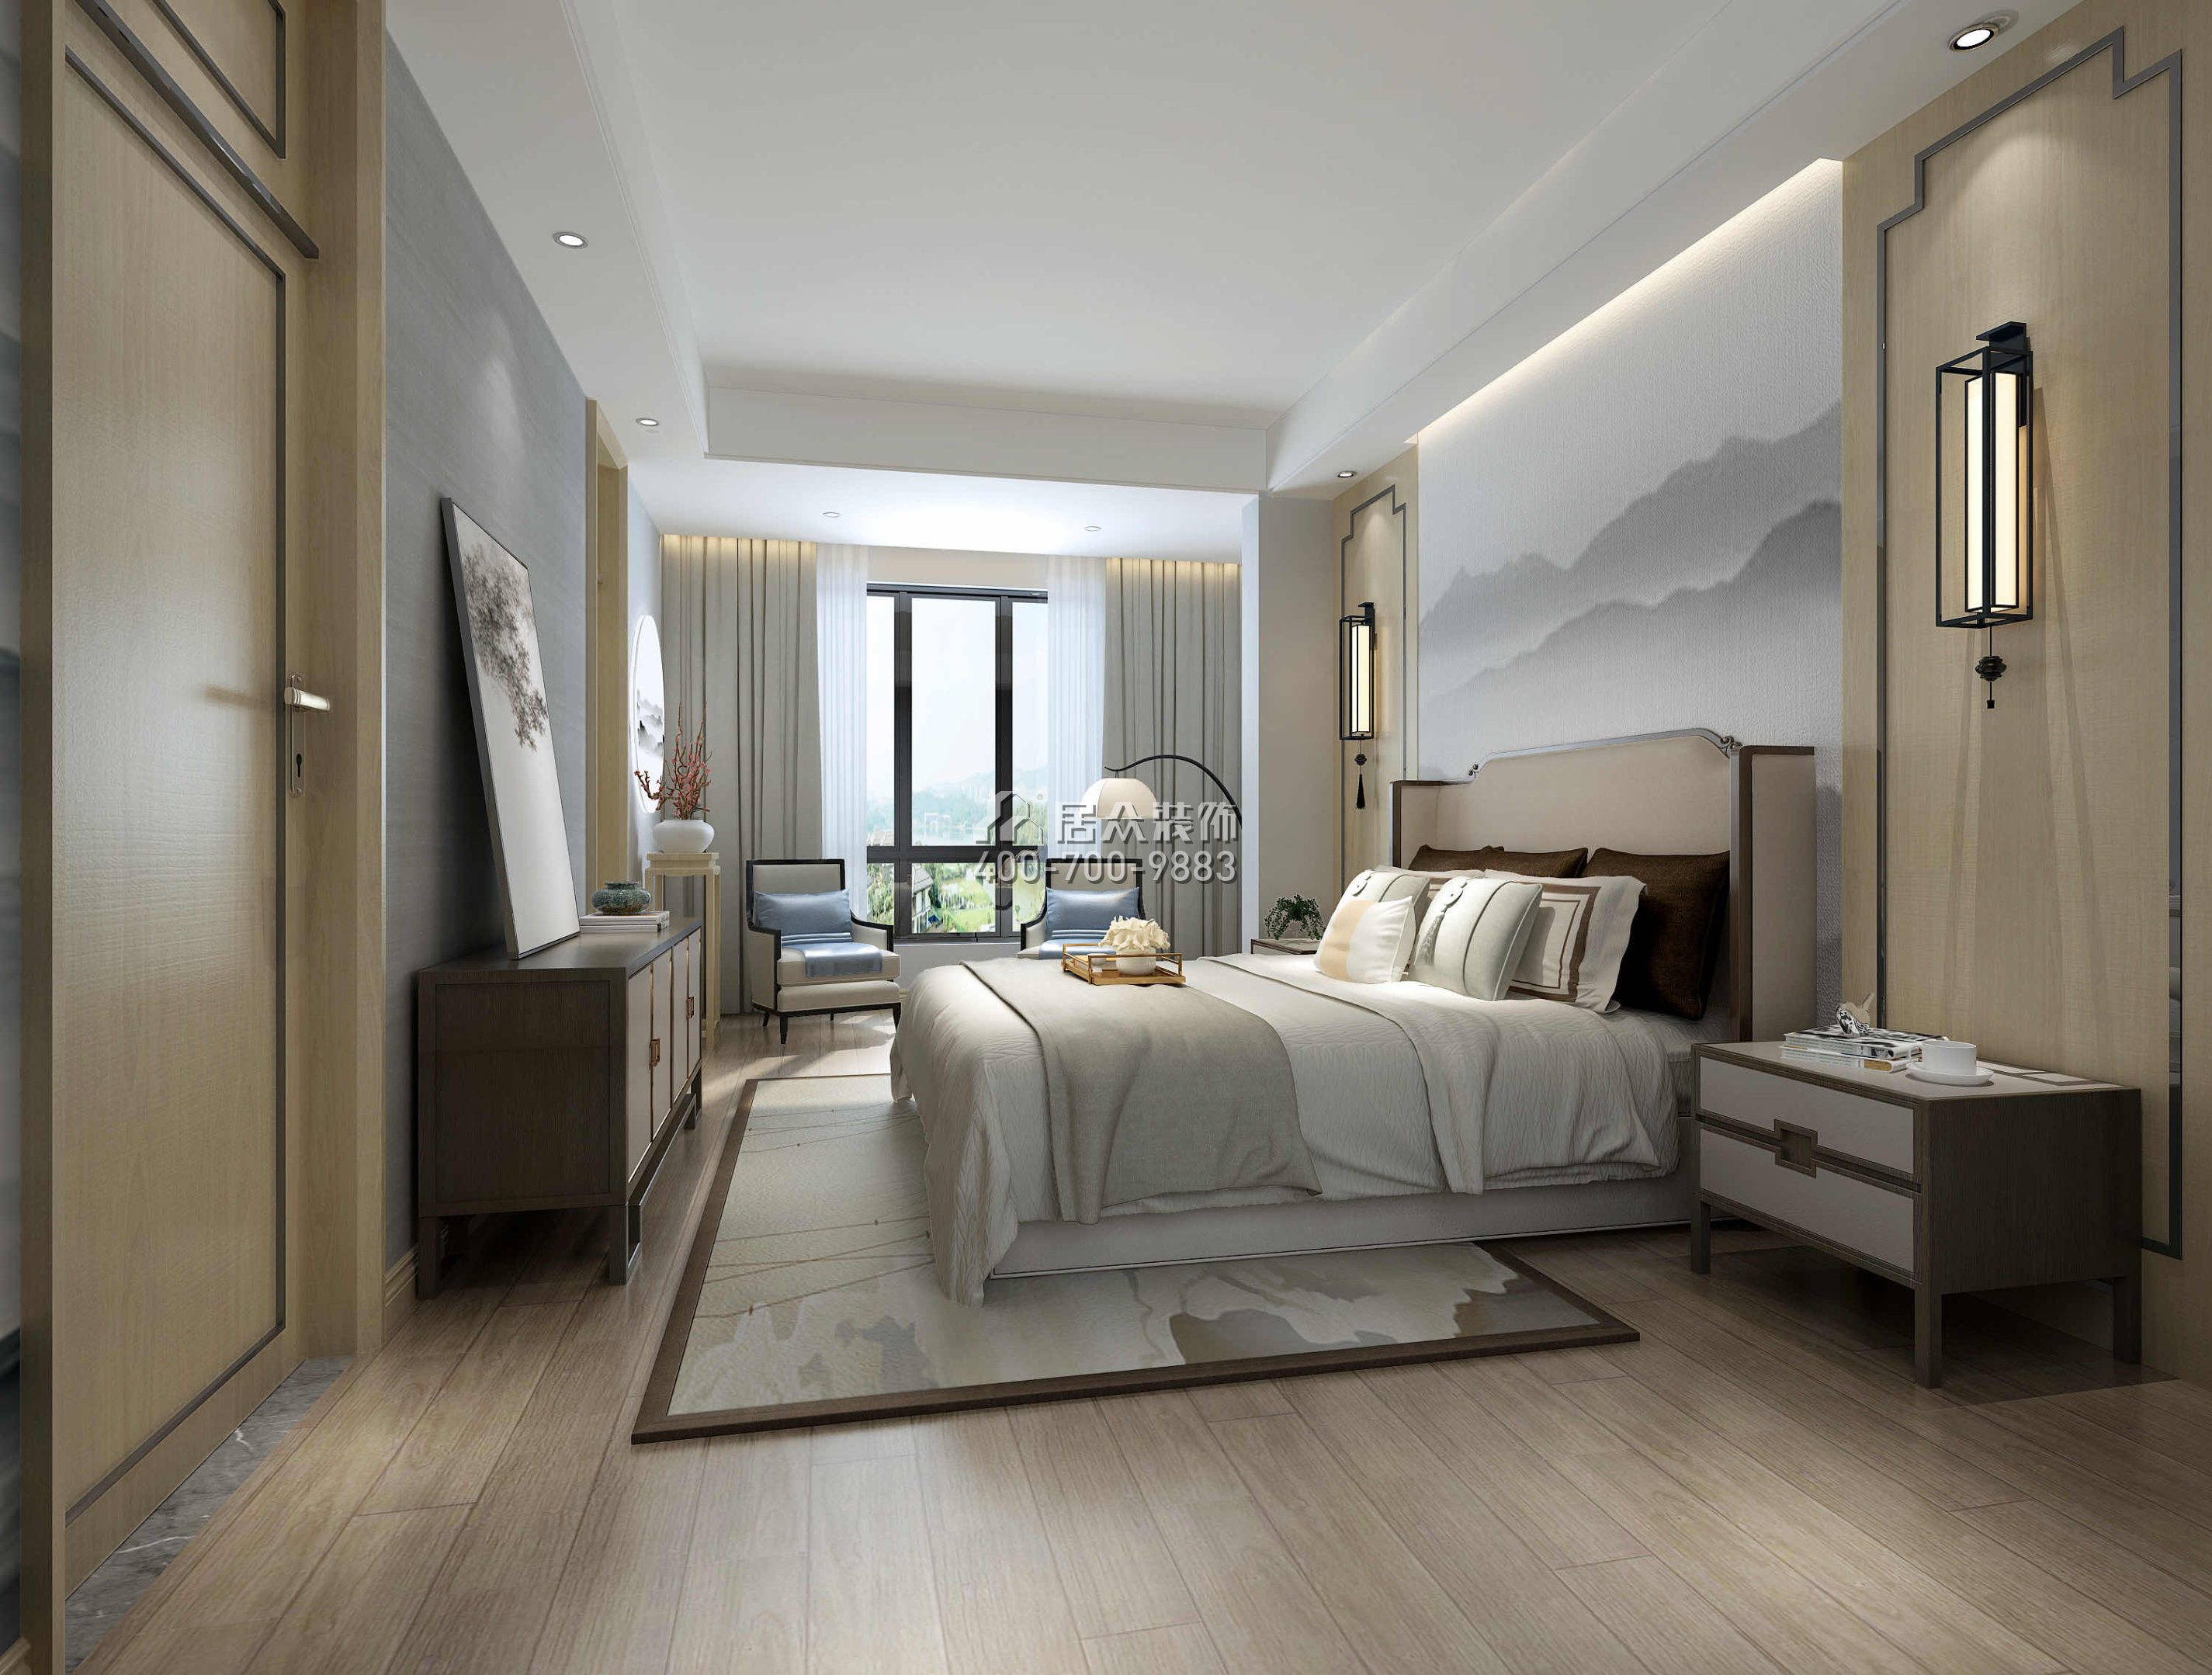 新光天地250平方米中式风格别墅户型卧室装修效果图